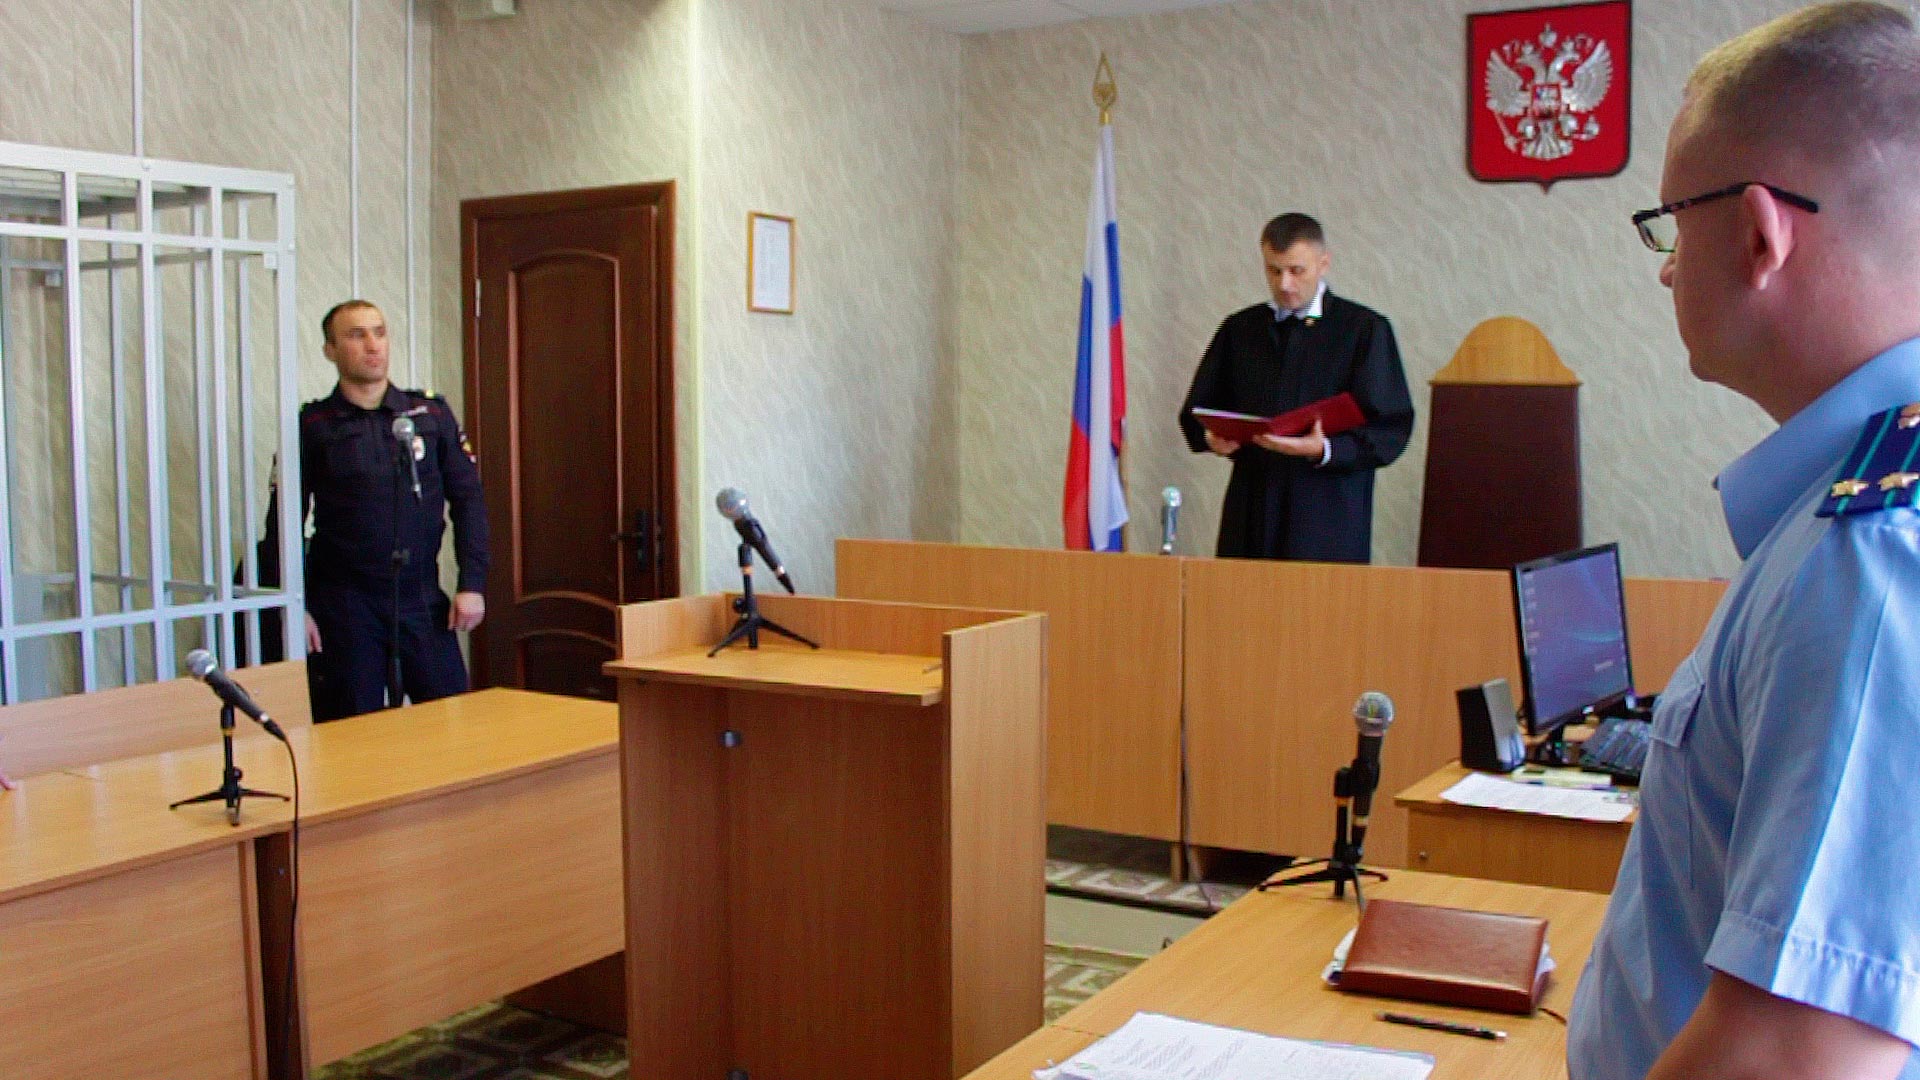 Районный суд николаевской области